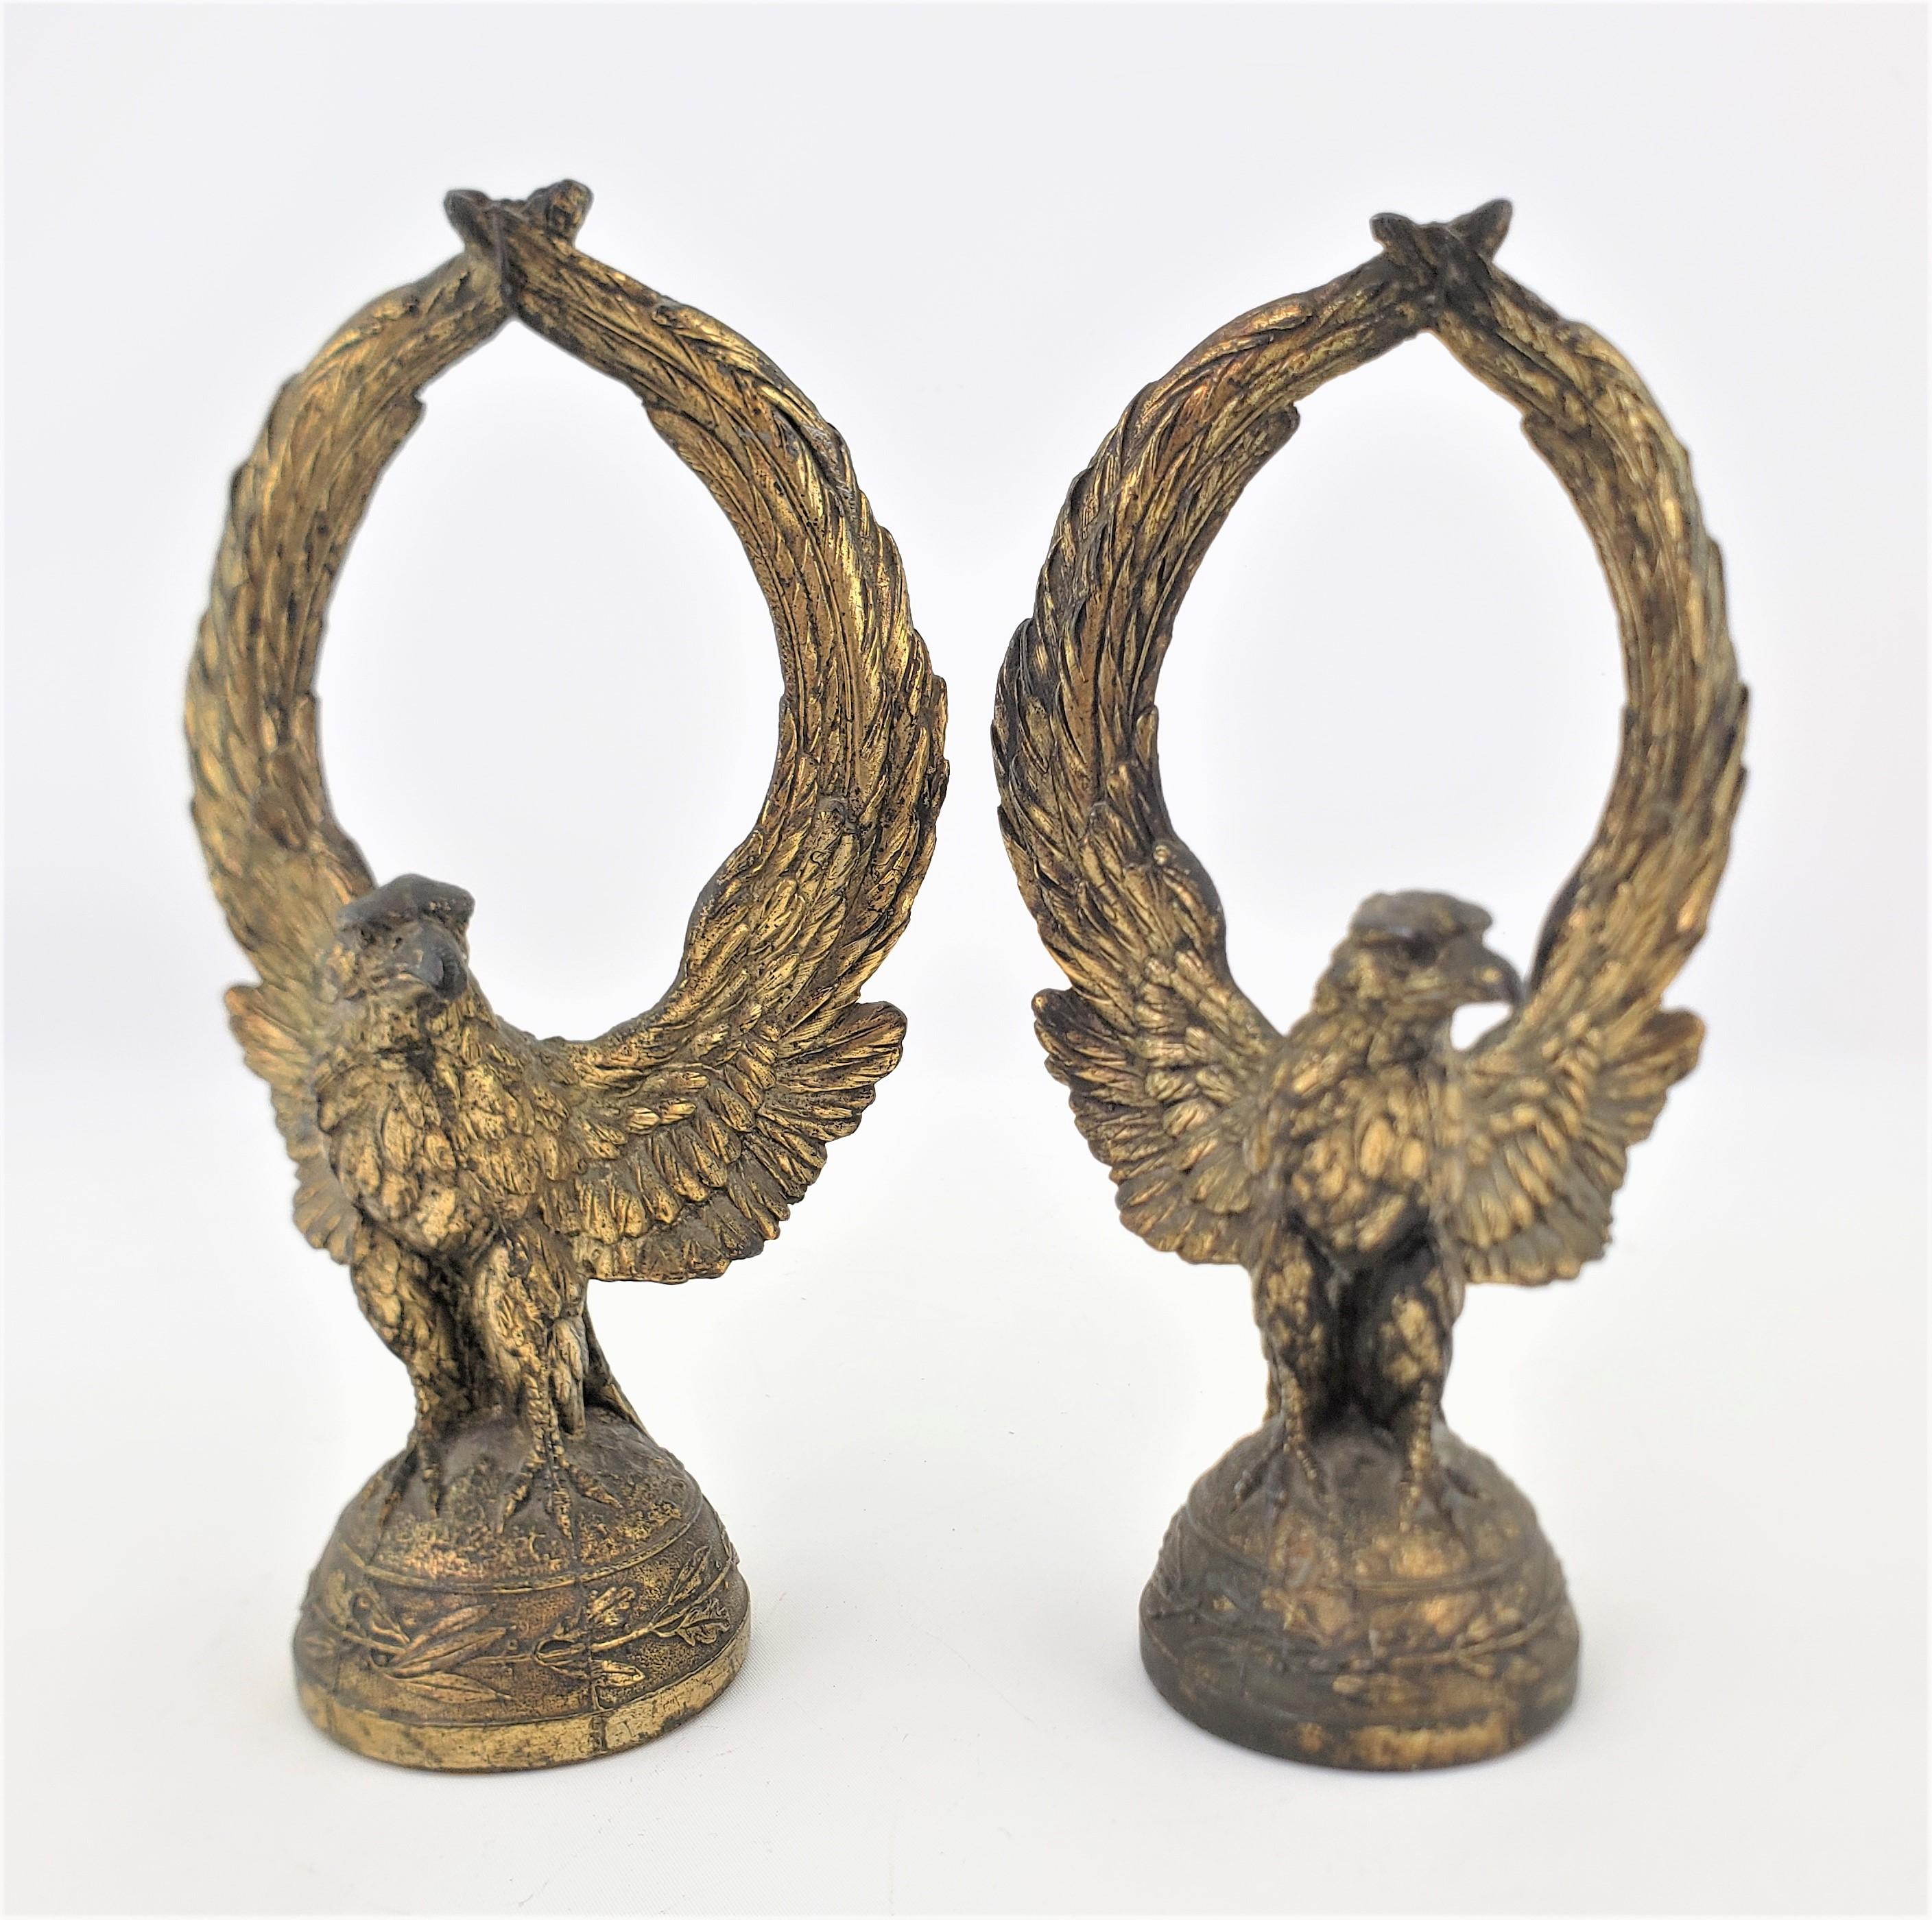 Dieses Paar antiker Weißkopfseeadler ist unsigniert, wurde aber vermutlich um 1900 in den Vereinigten Staaten im edwardianischen Stil hergestellt. Die Adler sind sehr realistisch und detailgetreu in Zinn oder unedlem Metall gegossen und mit einer